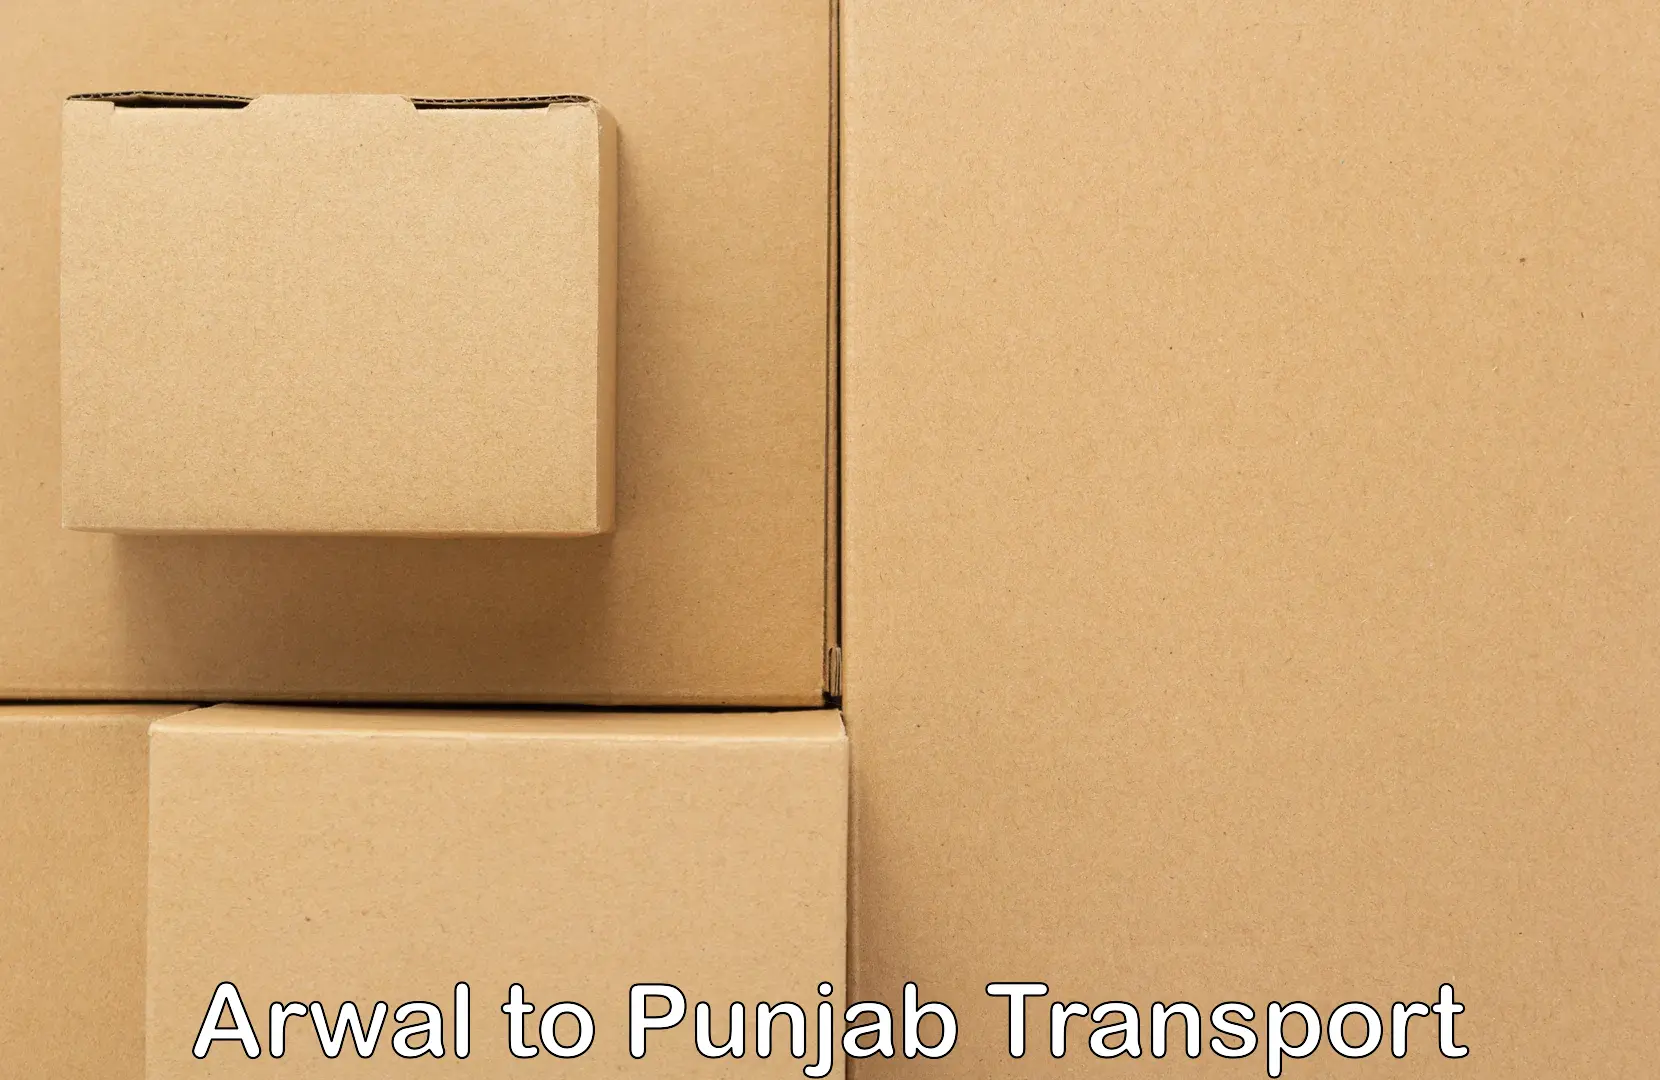 Parcel transport services Arwal to Punjab